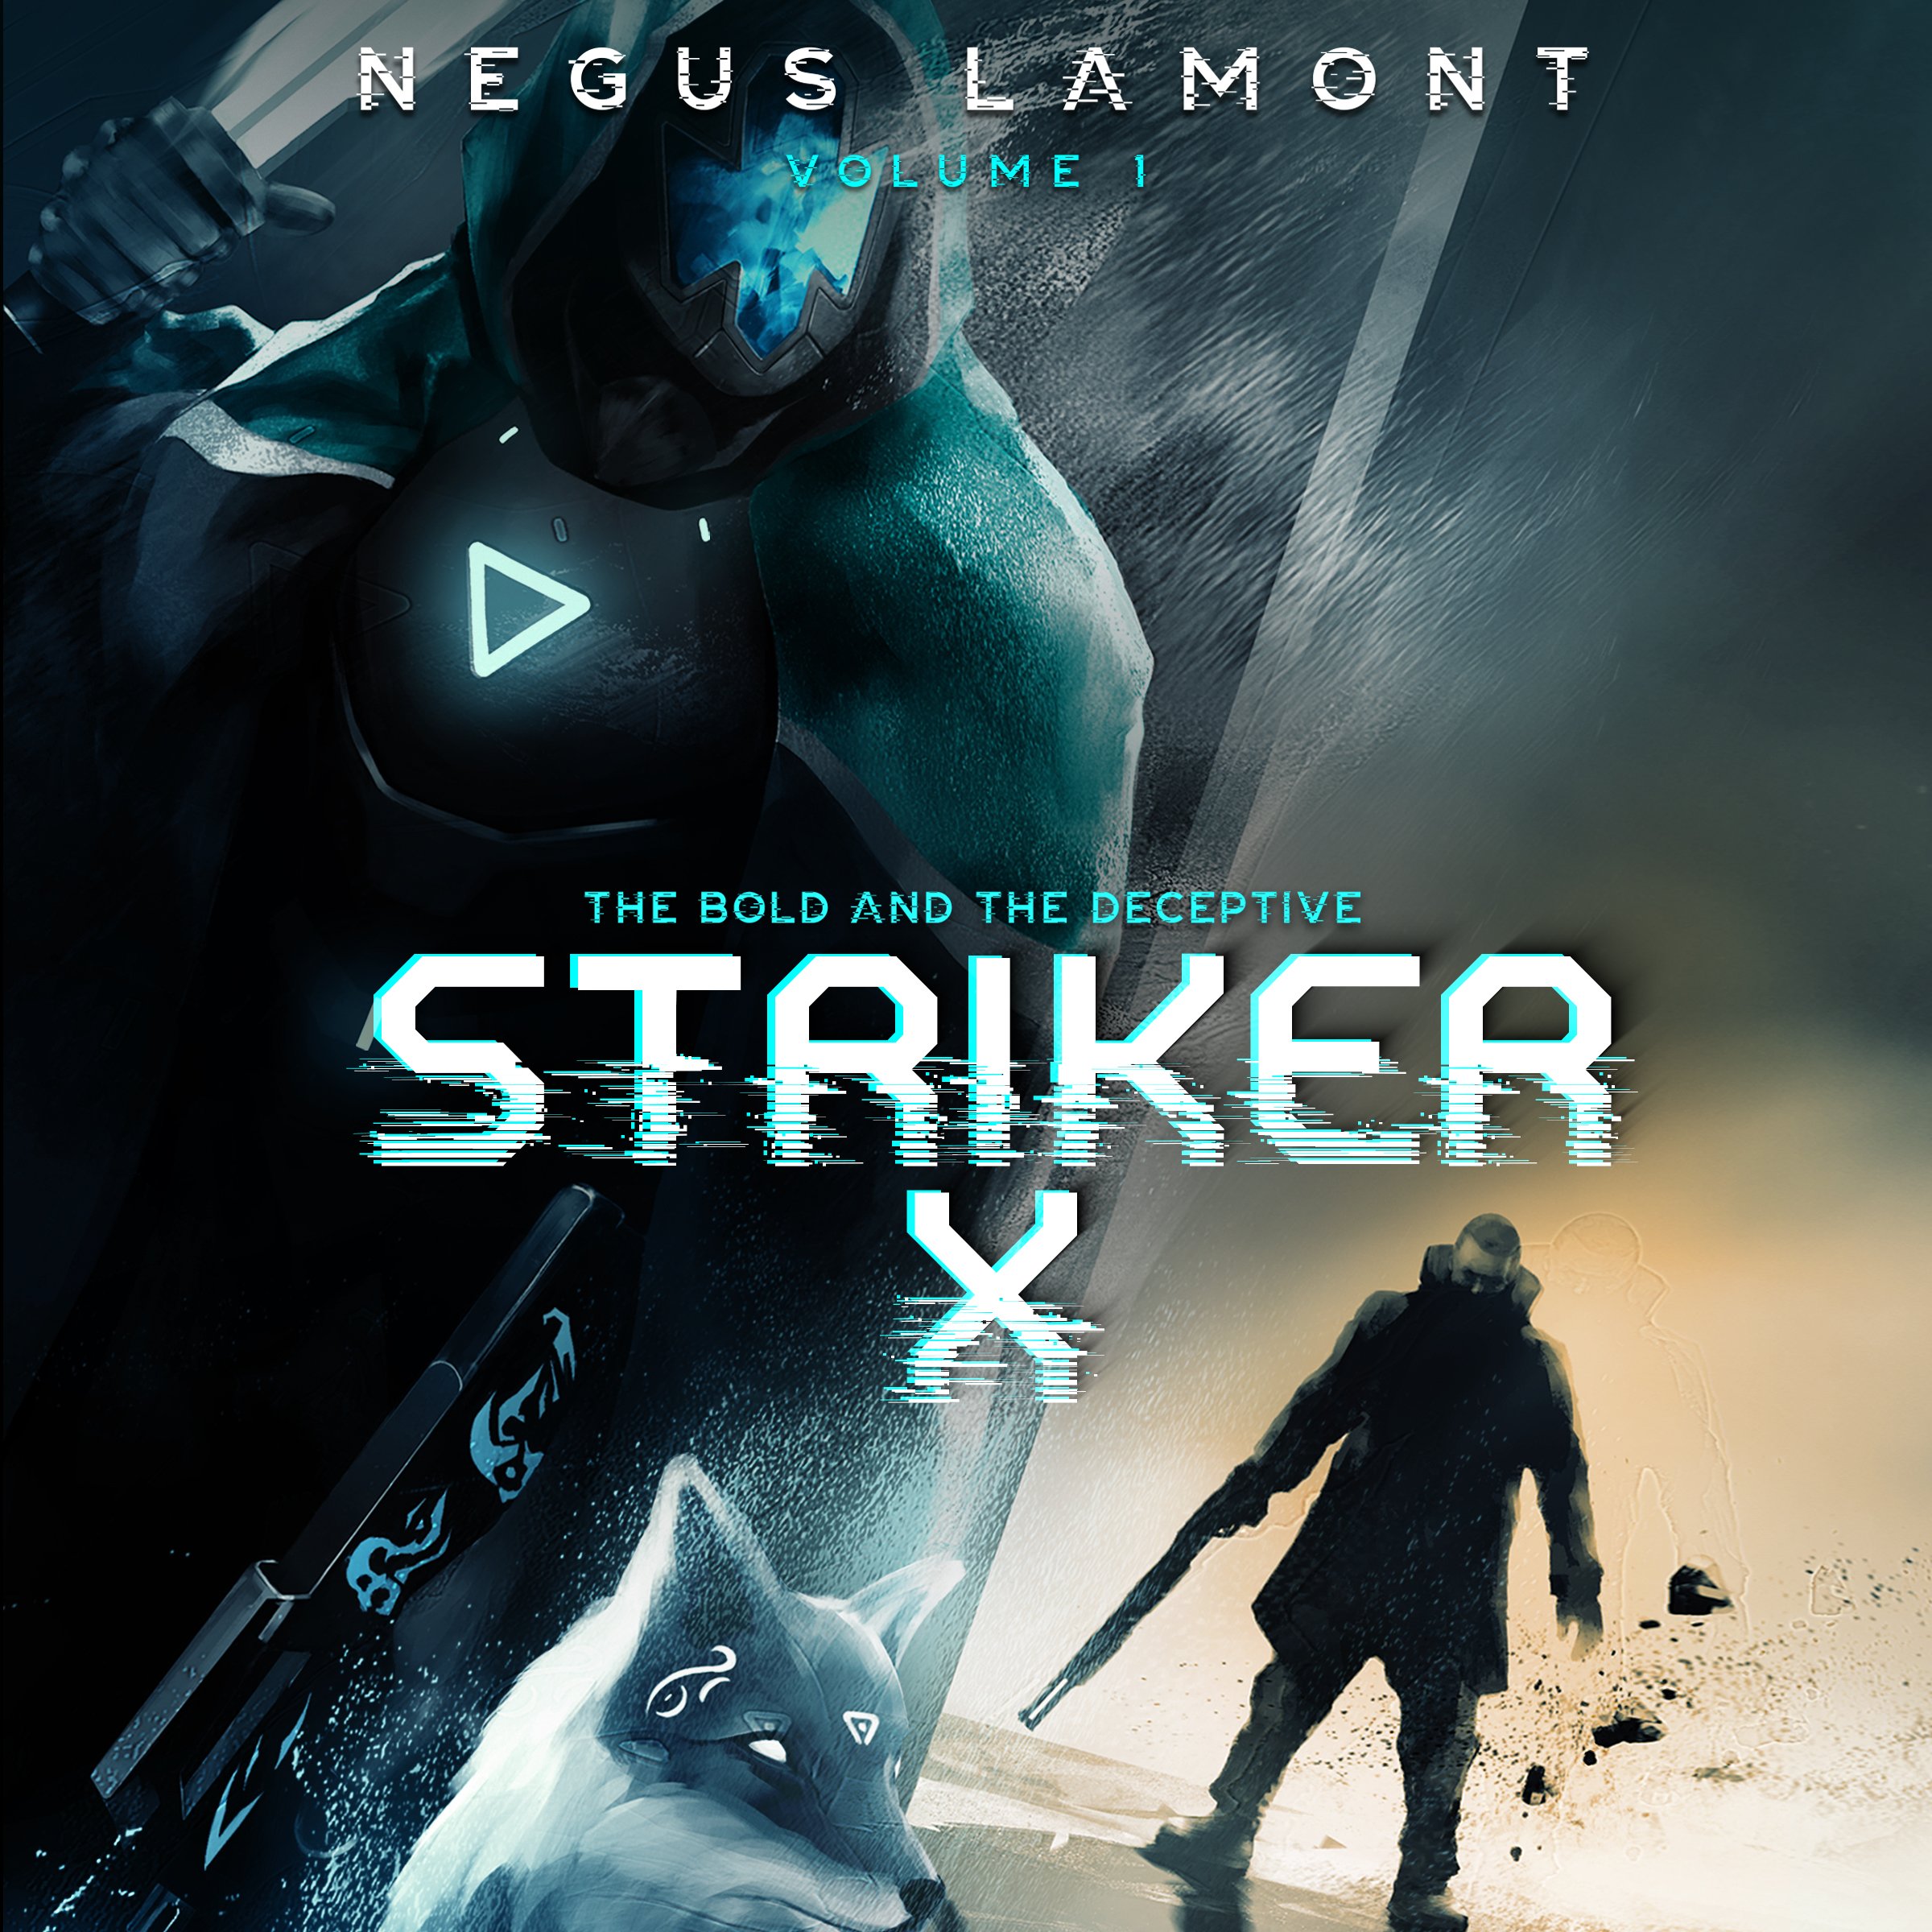 Audiobook Cover_Negus Lamon_Striker X.jpg